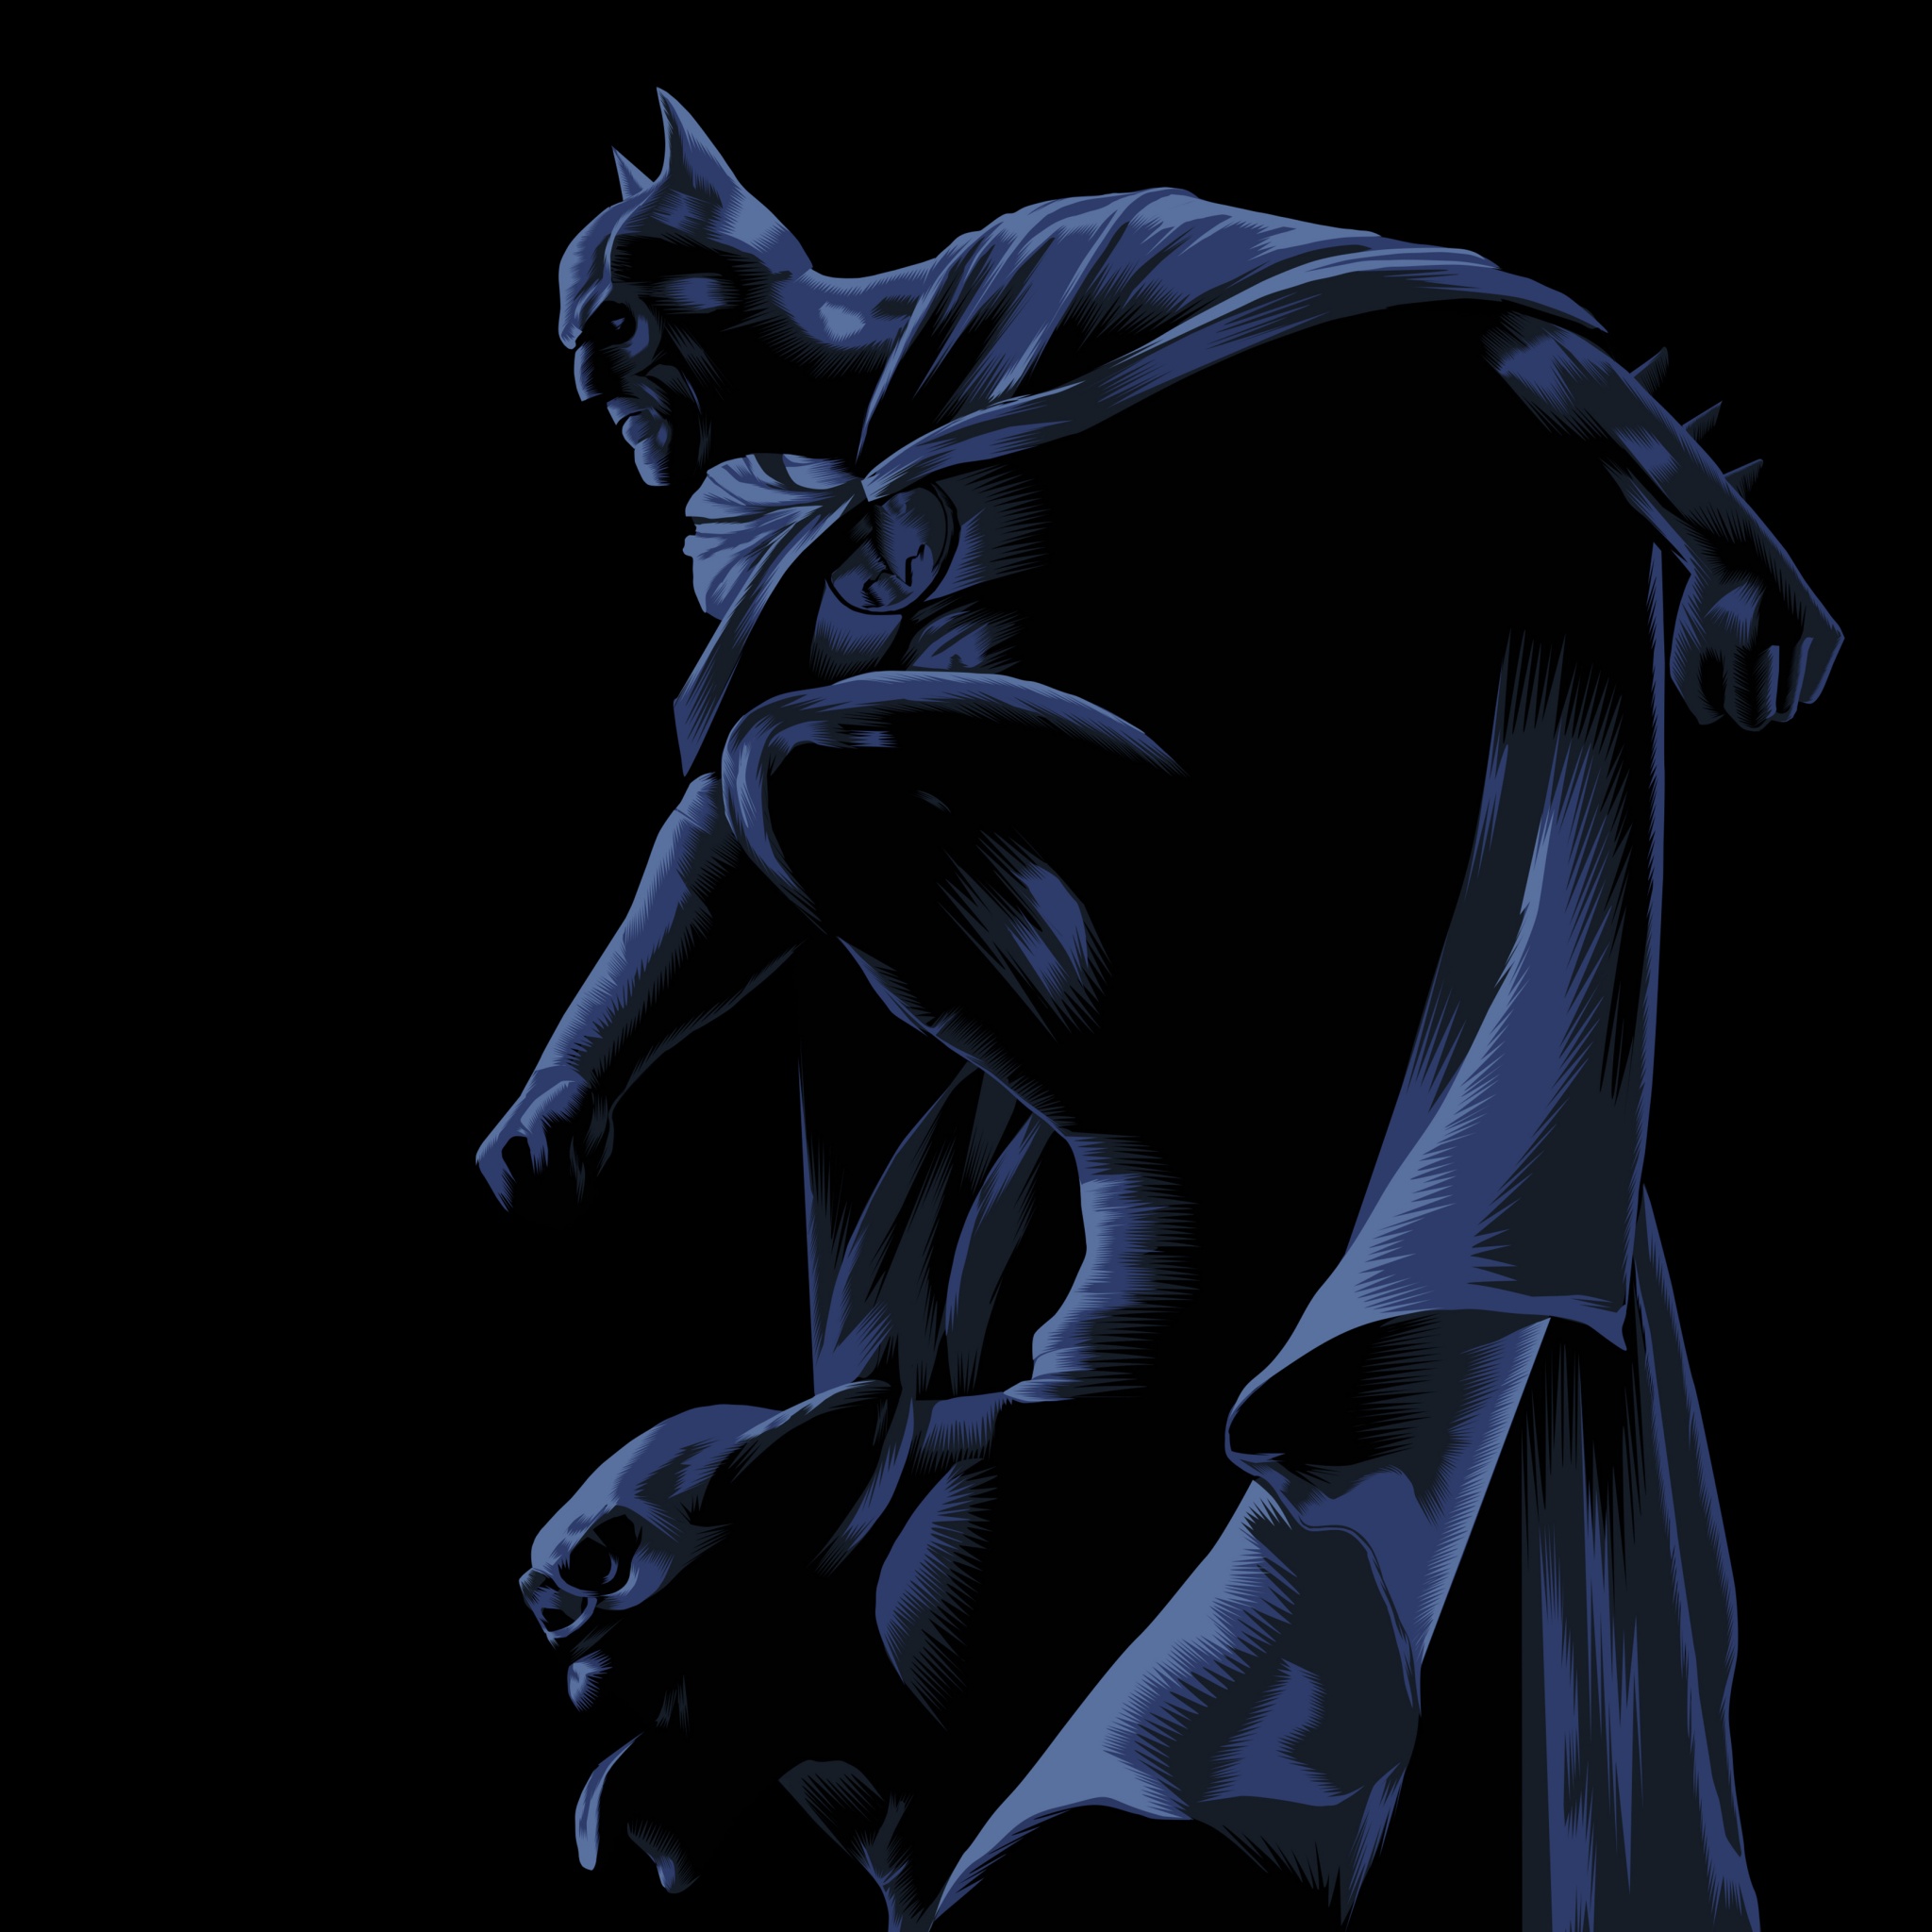 Batman Wallpaper 4K, DC Superheroes, Graphics CGI, #5952